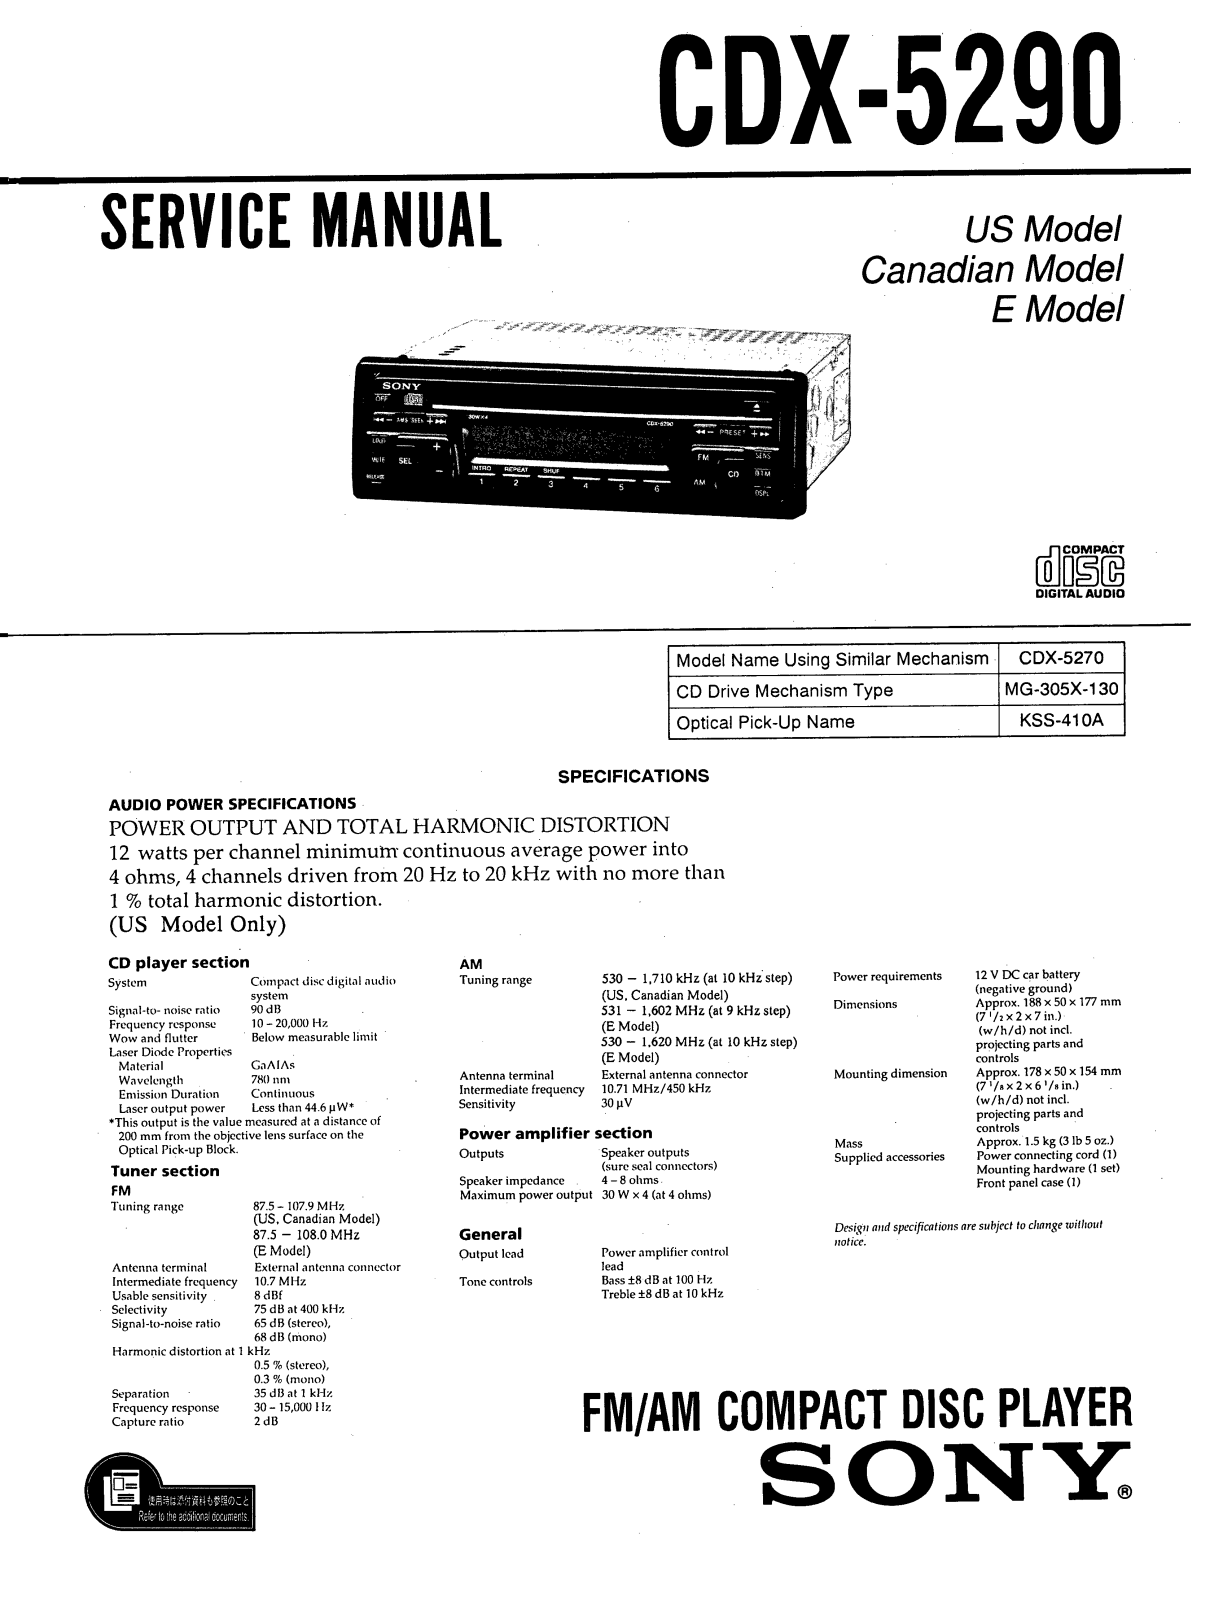 Sony CDX-5290 Service manual